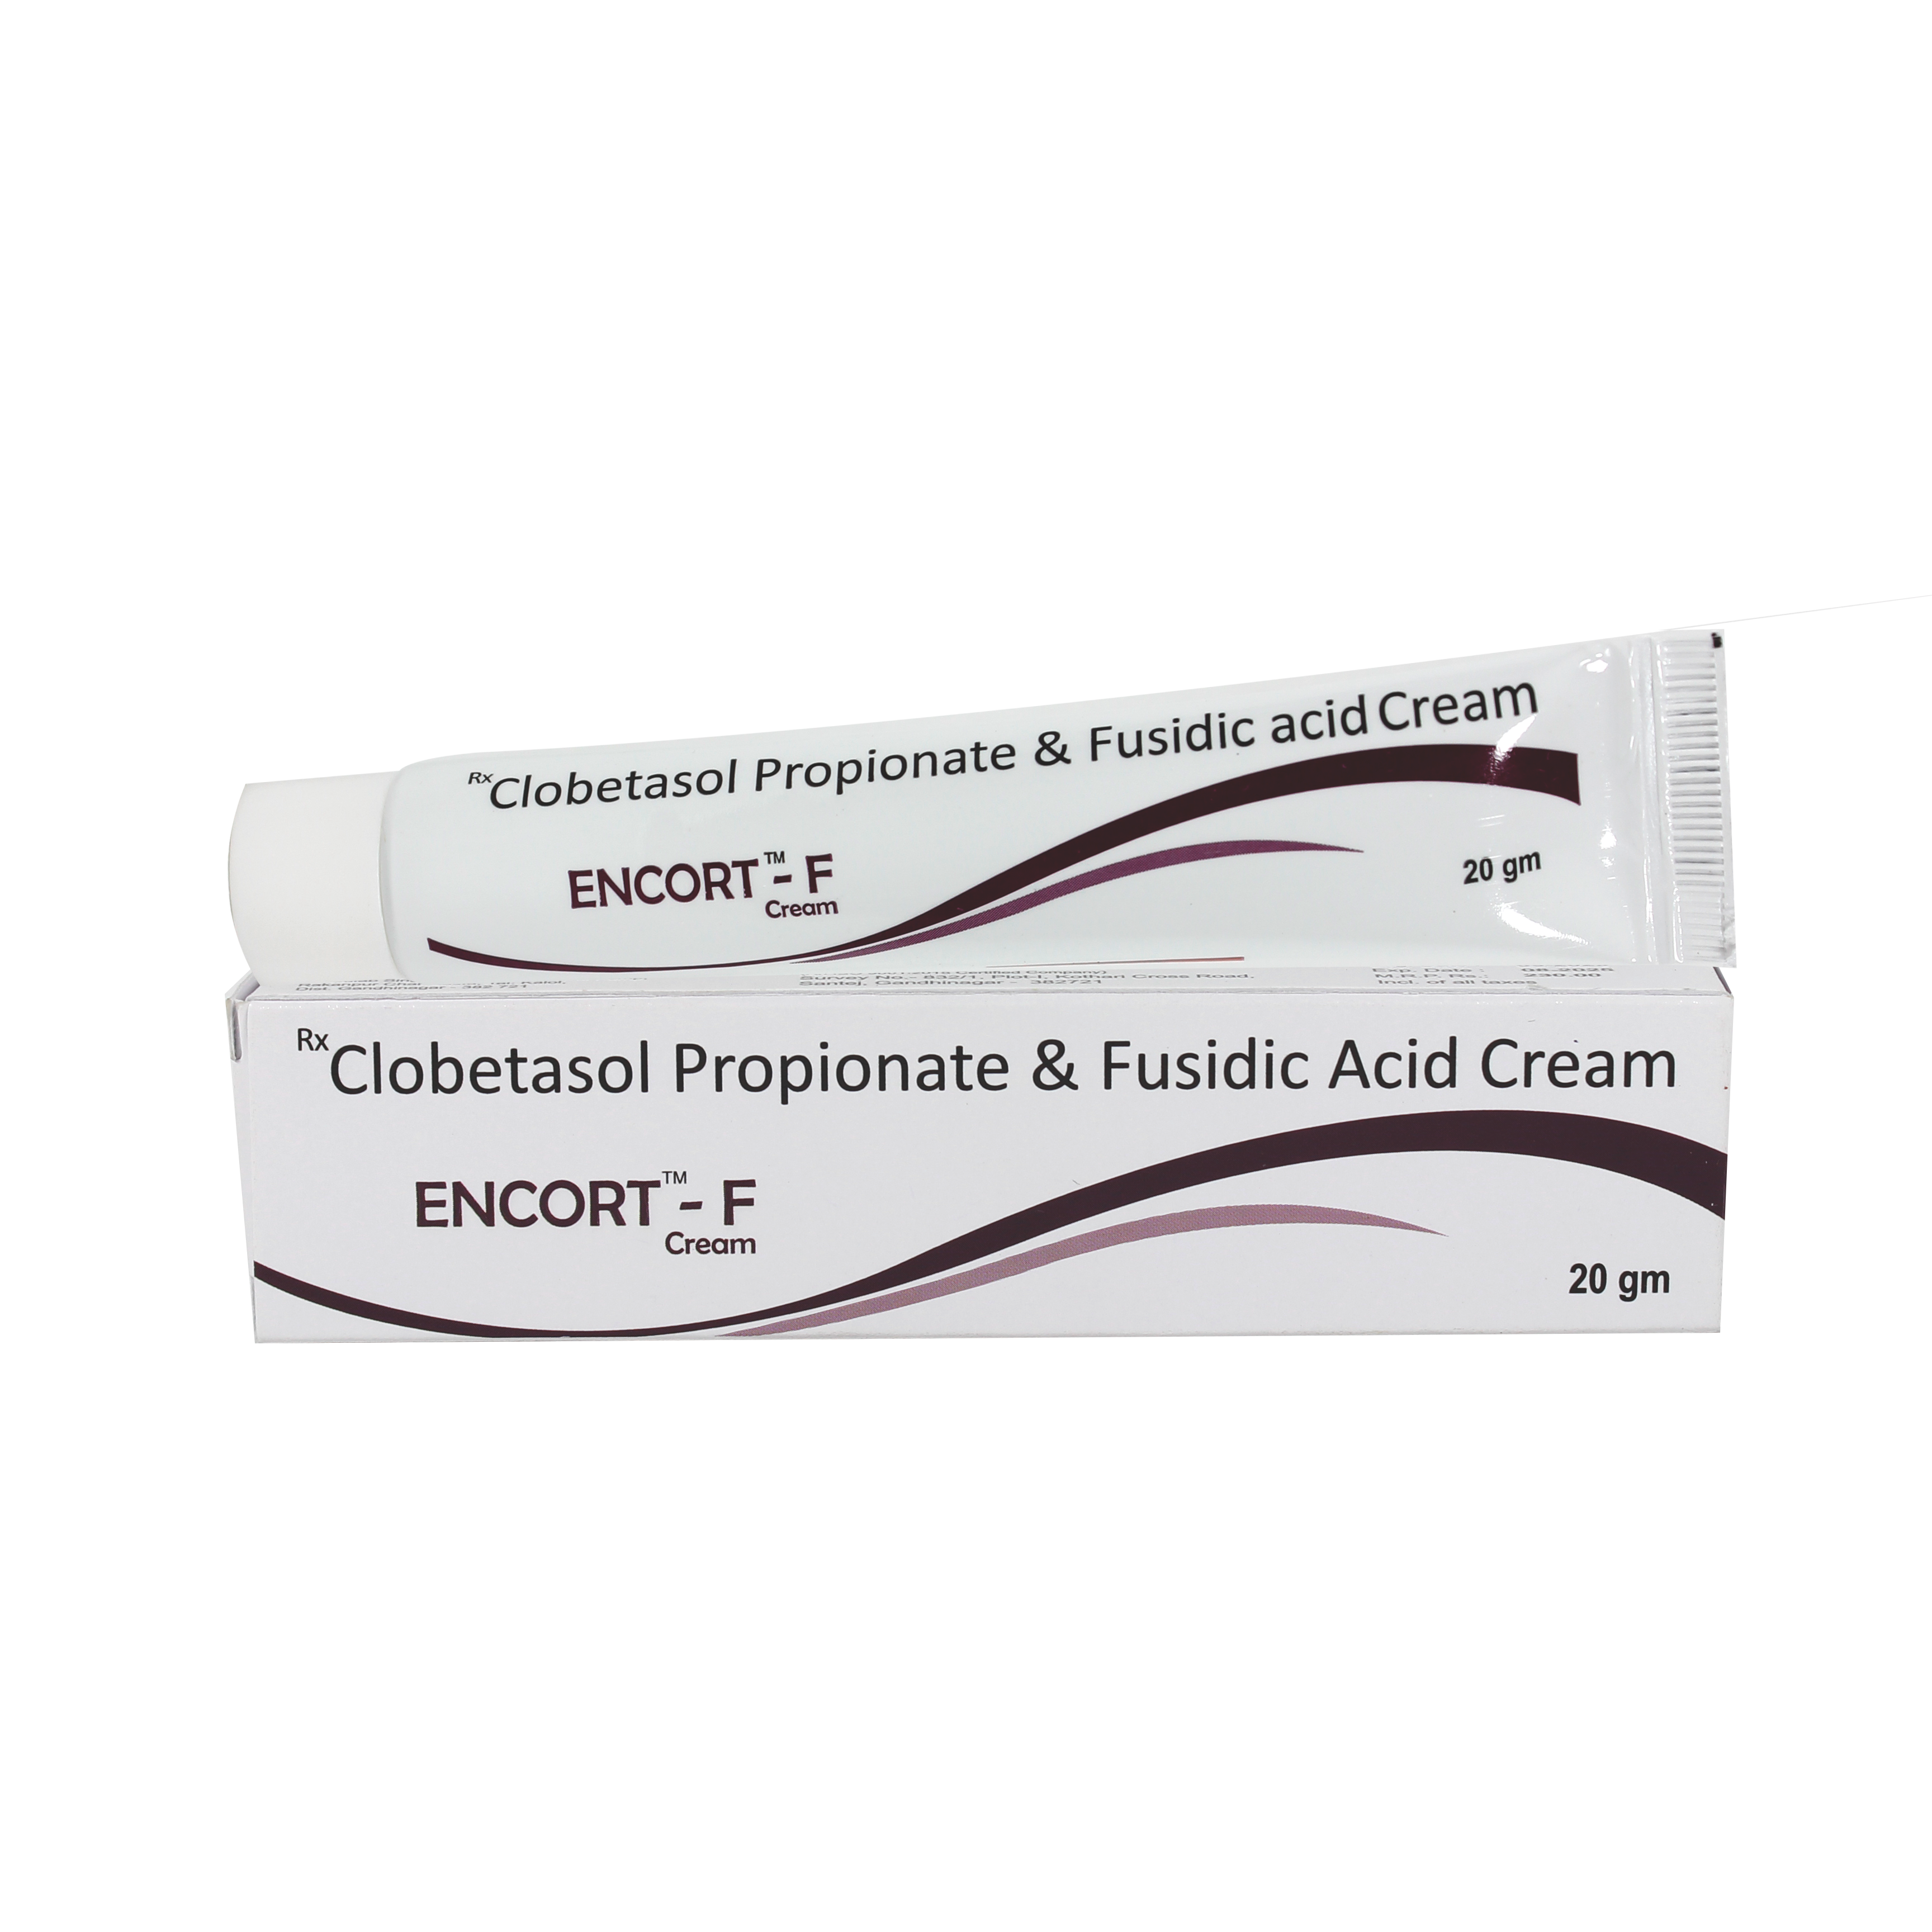 Clobetasol Propionate & Fusidic Acid Cream